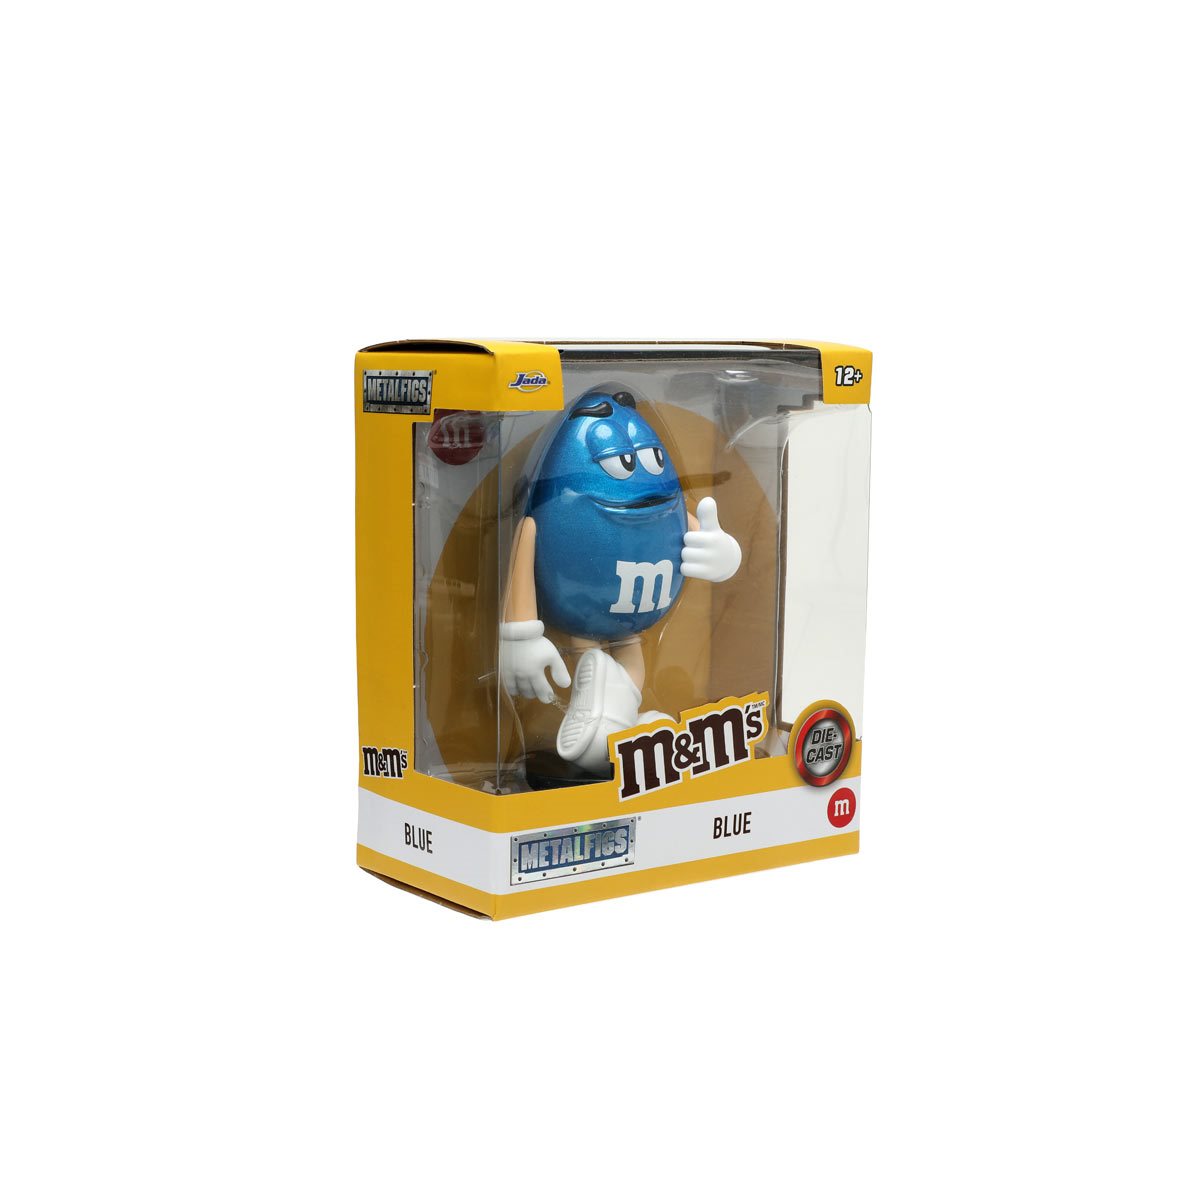  Jada Toys M&M's 4 Blue Die-cast Collectible Figure